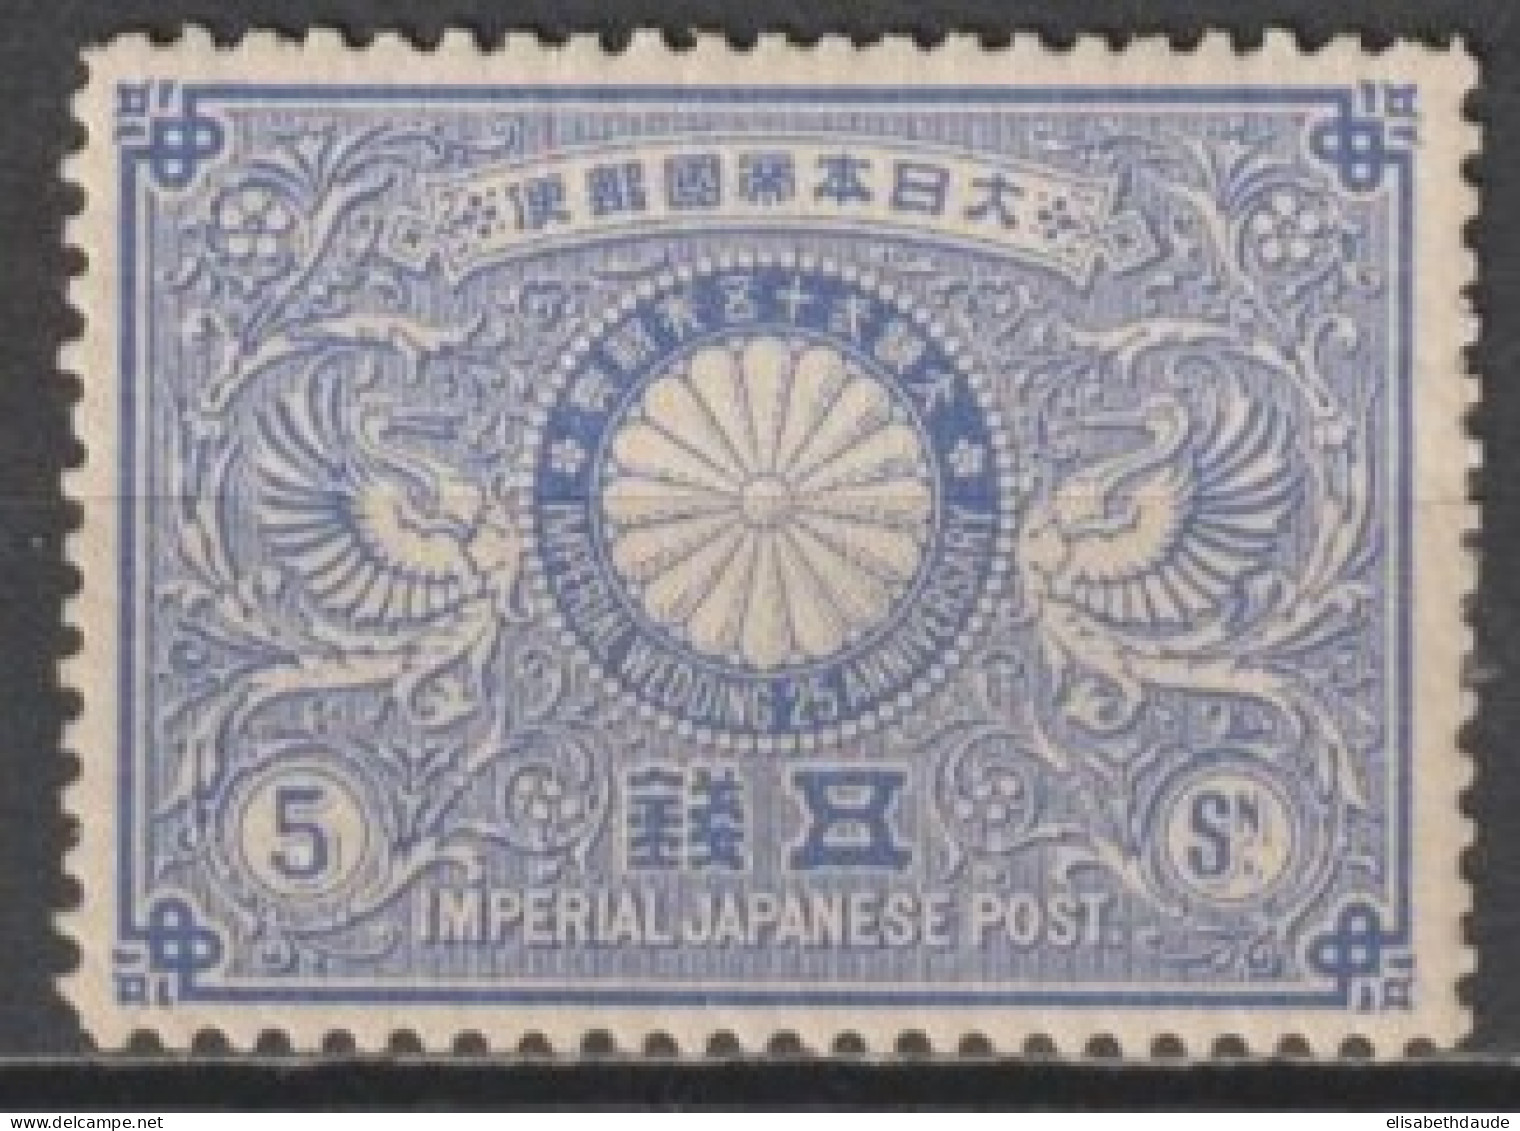 JAPON - 1894 - YT 88 * MH -  COTE = 110 EUR. - Nuovi